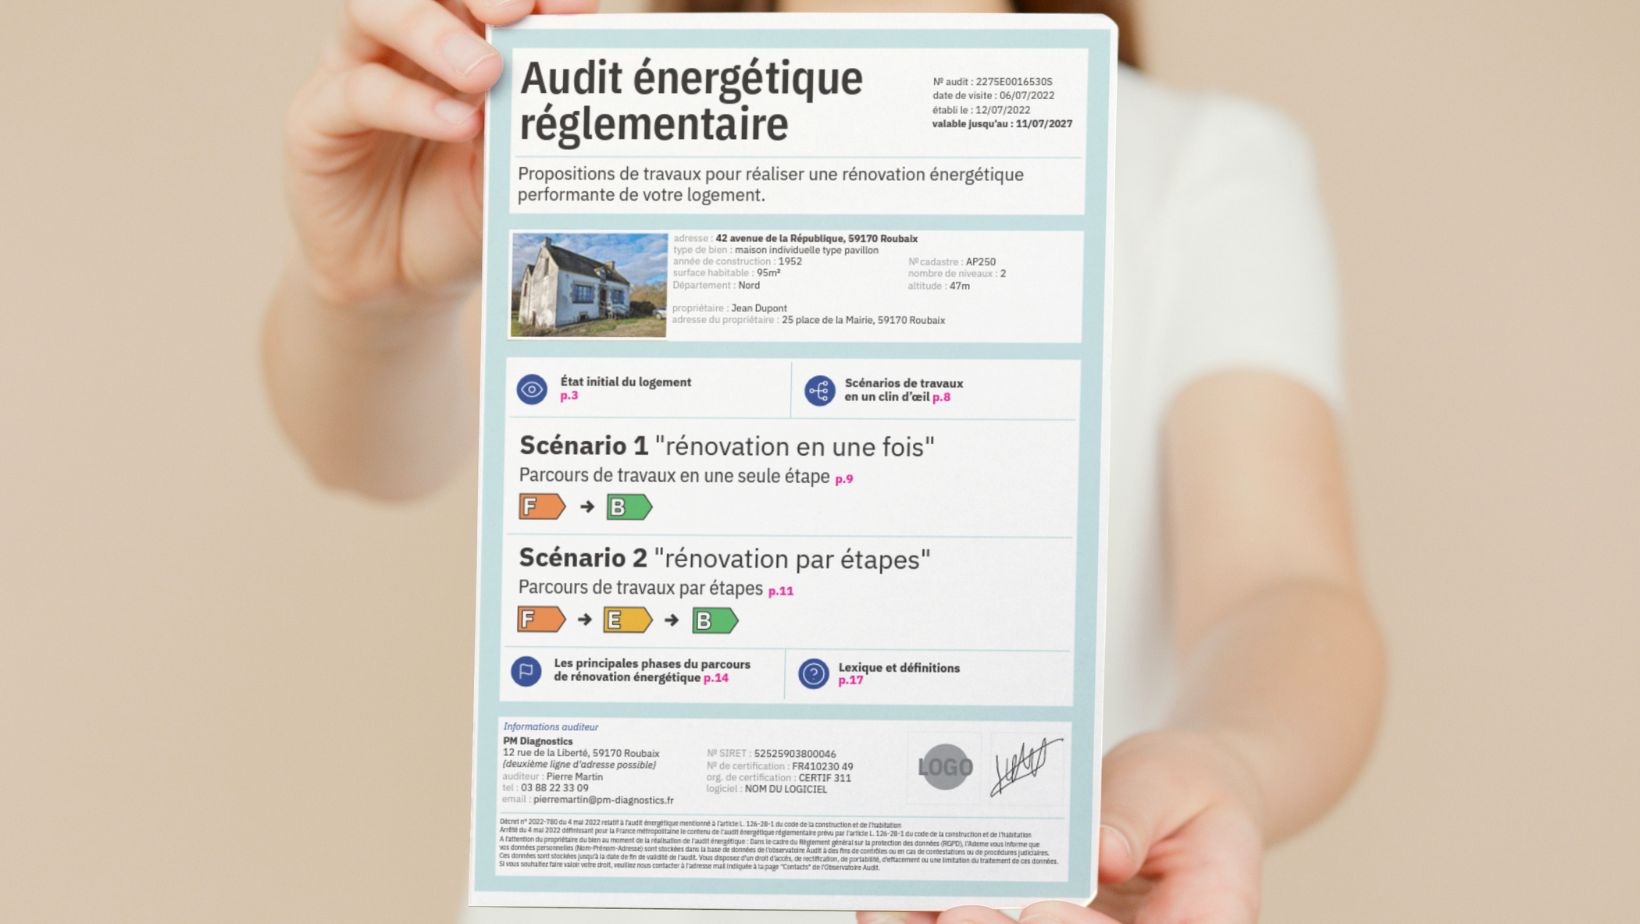 Un nouveau format obligatoire pour les audits énergétiques réglementaires